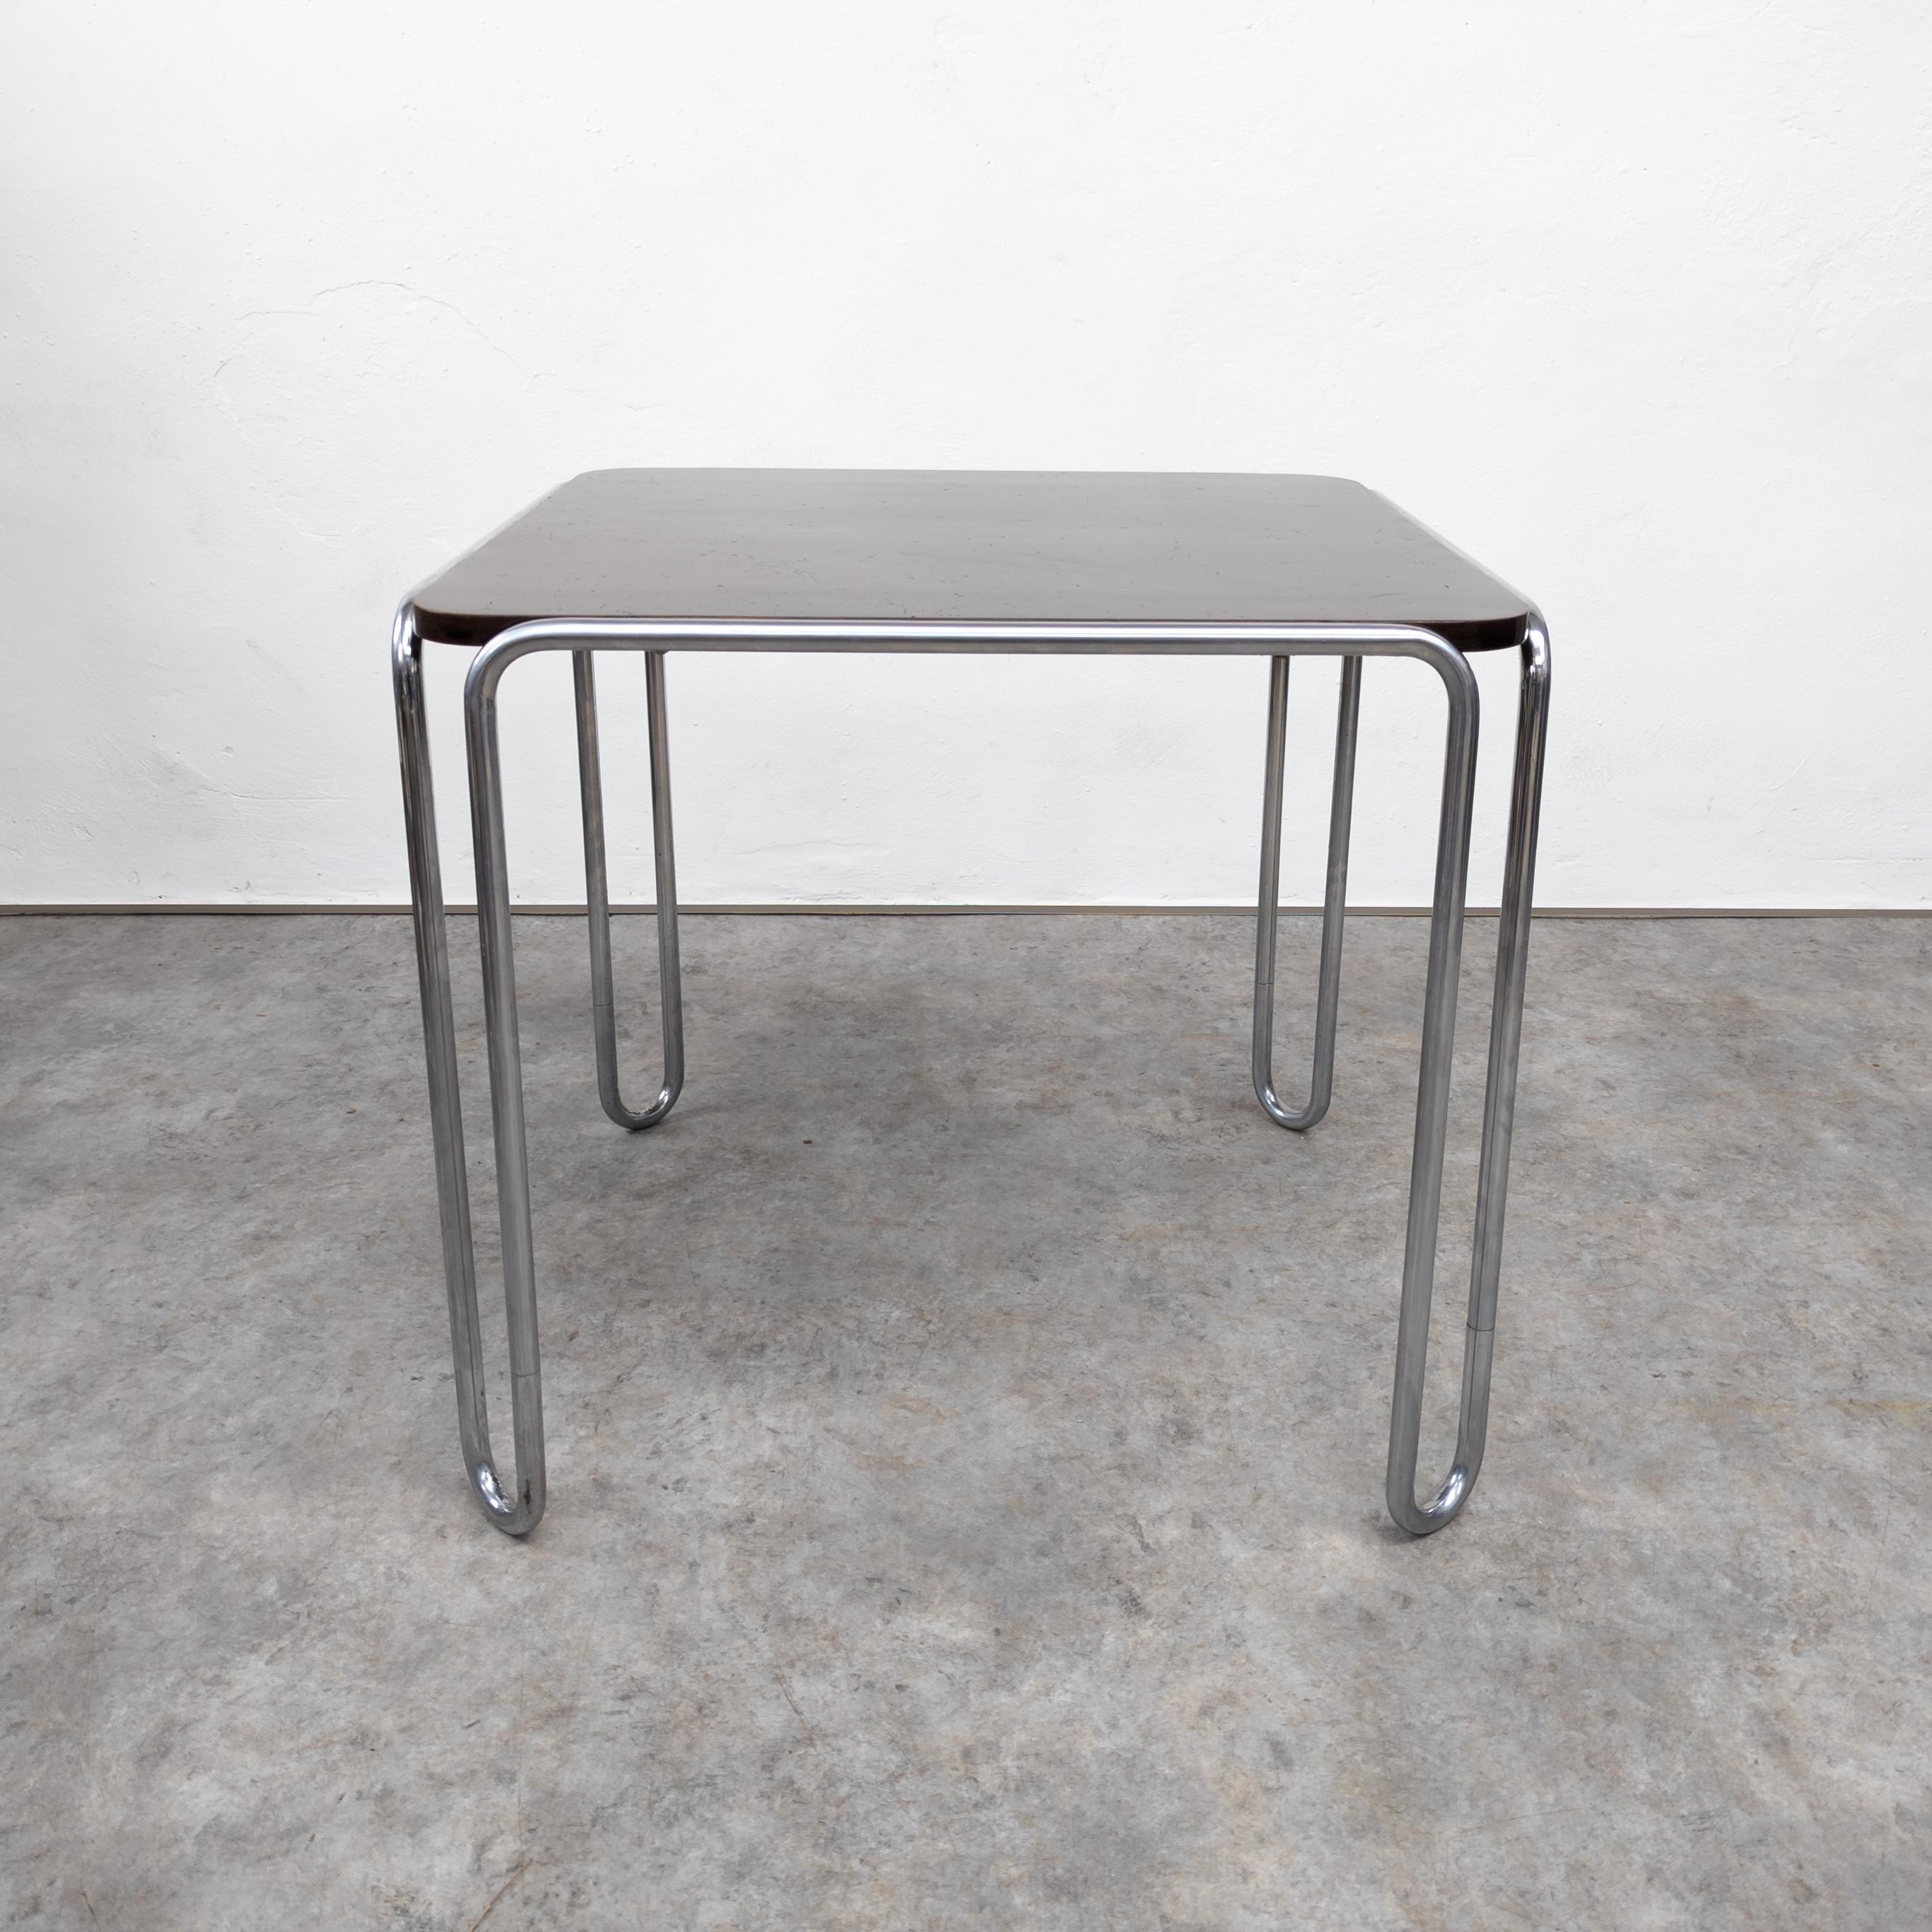 Der von Marcel Breuer entworfene Tisch Thonet B10 ist ein ikonisches Möbelstück der Moderne. Er hat einen schlanken Stahlrohrrahmen mit einem  Holzplatte, die die Bauhaus-Prinzipien der Einfachheit, Funktionalität und geometrischen Formen